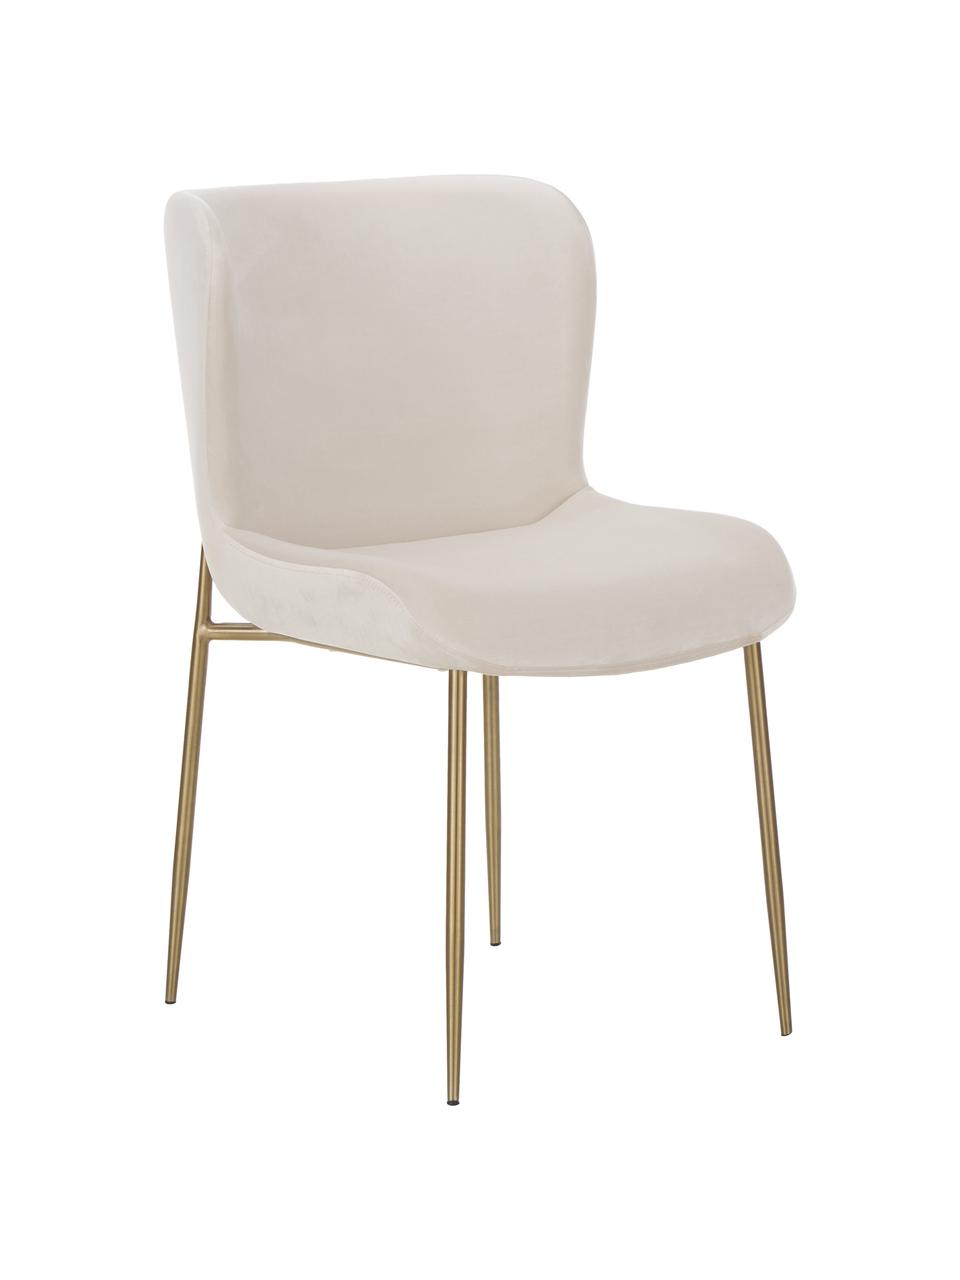 Fluwelen gestoffeerde stoel Tess in beige, Bekleding: fluweel (polyester) Met 3, Poten: metaal, gepoedercoat, Fluweel beige, goudkleurig, B 49 x D 64 cm